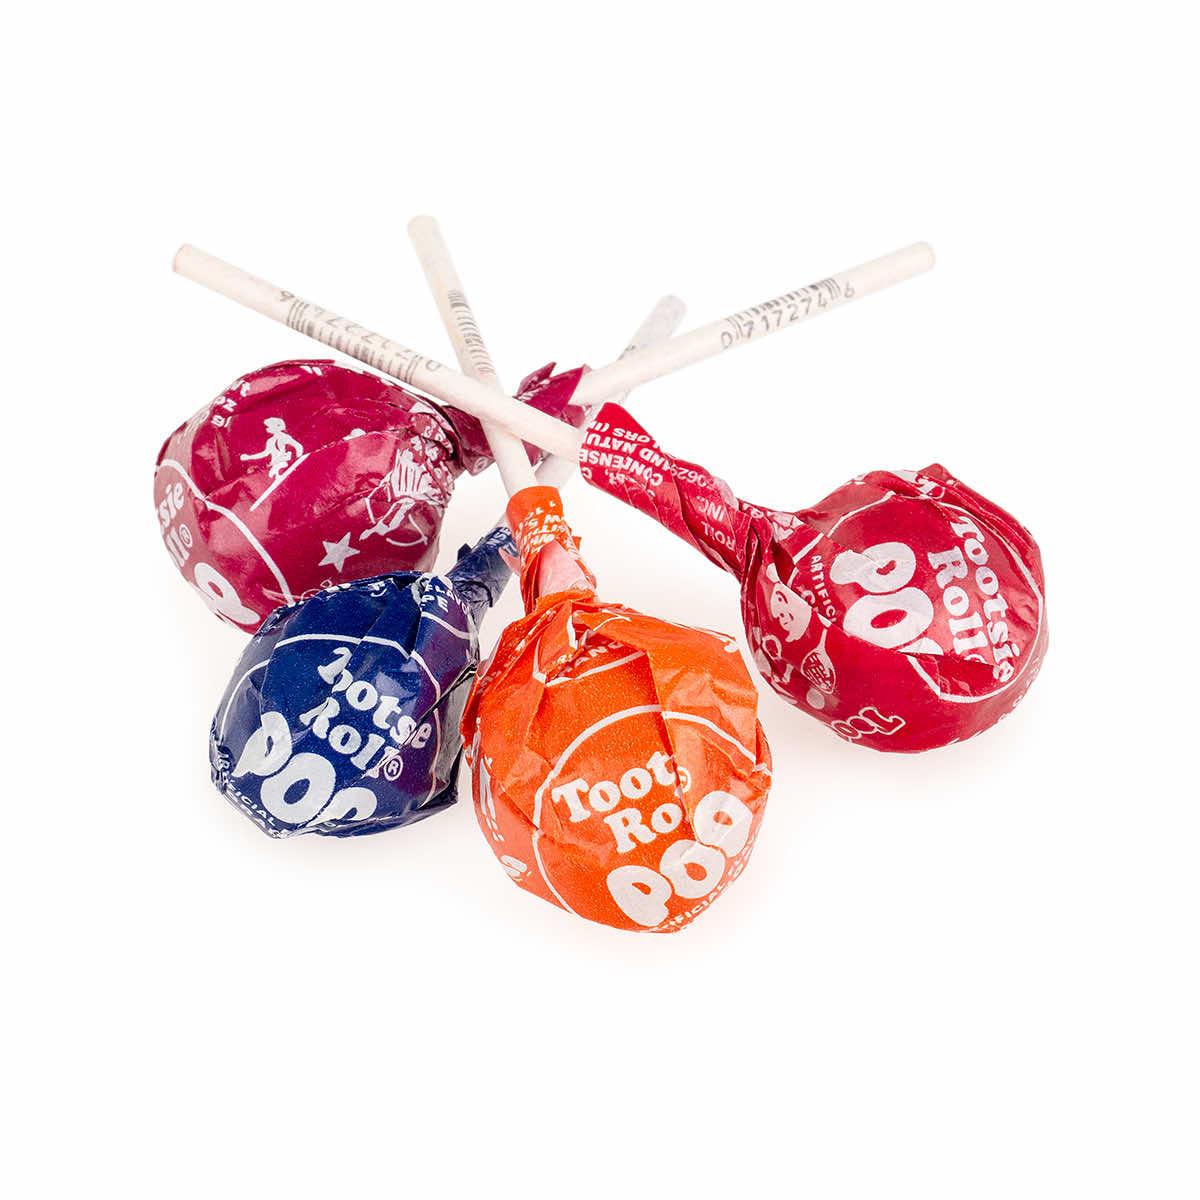 Popy Ball Lollipops • Lollipops & Suckers • Bulk Candy • Oh! Nuts®